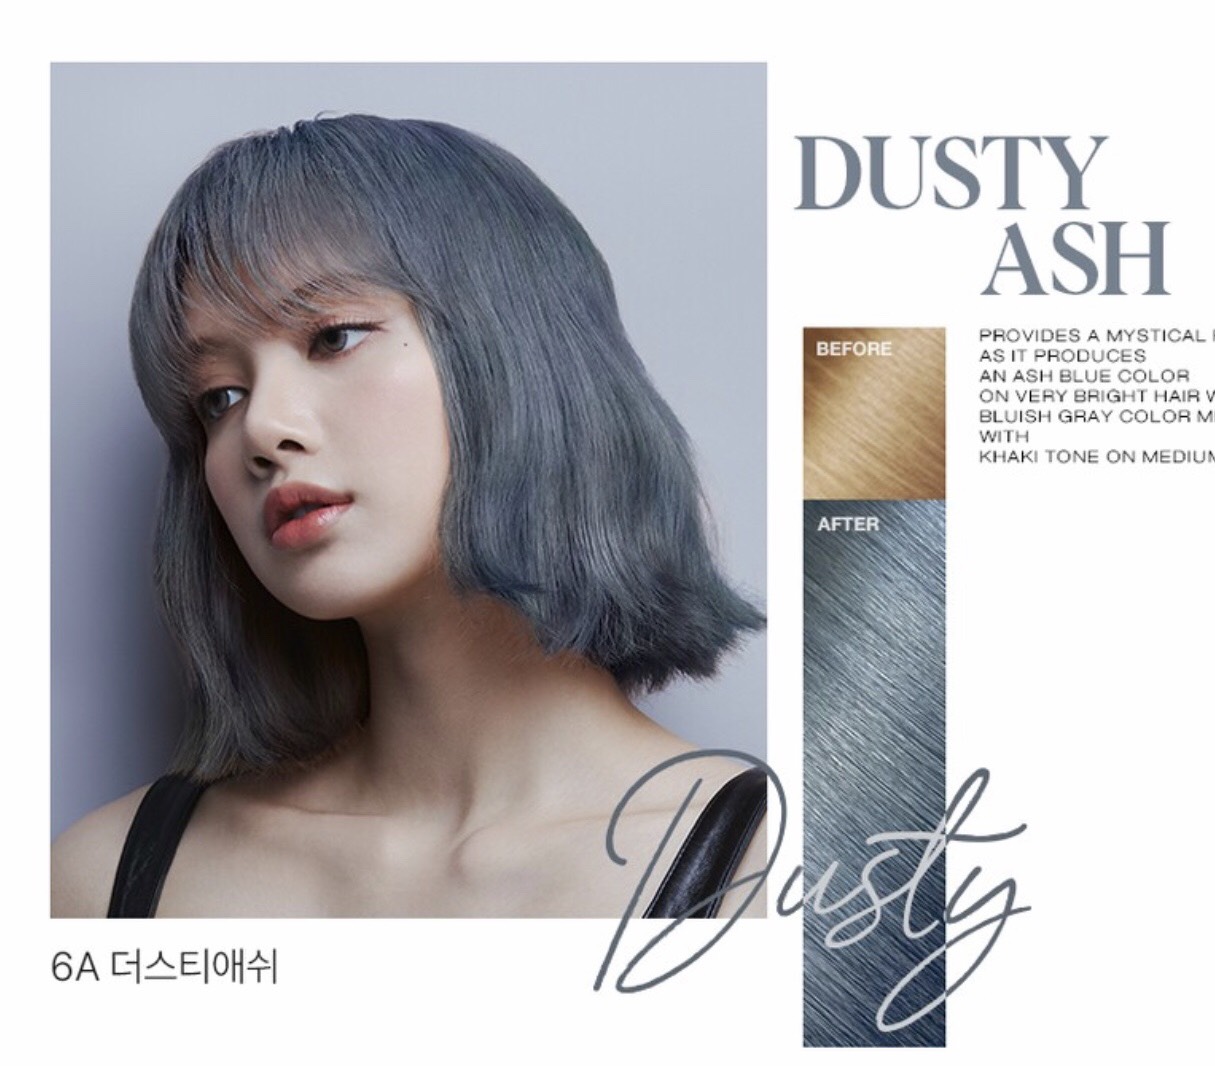 Có bao giờ bạn nghĩ tới việc nhuộm tóc màu xám? Với Hello Bubble 6A Dusty Ash, giờ đây tóc xám đã trở thành một phong cách thời trang mới. Xem qua hình ảnh sản phẩm trên trang web của chúng tôi để tìm hiểu thêm về những sơ bộ màu sắc và hiệu quả của sản phẩm.